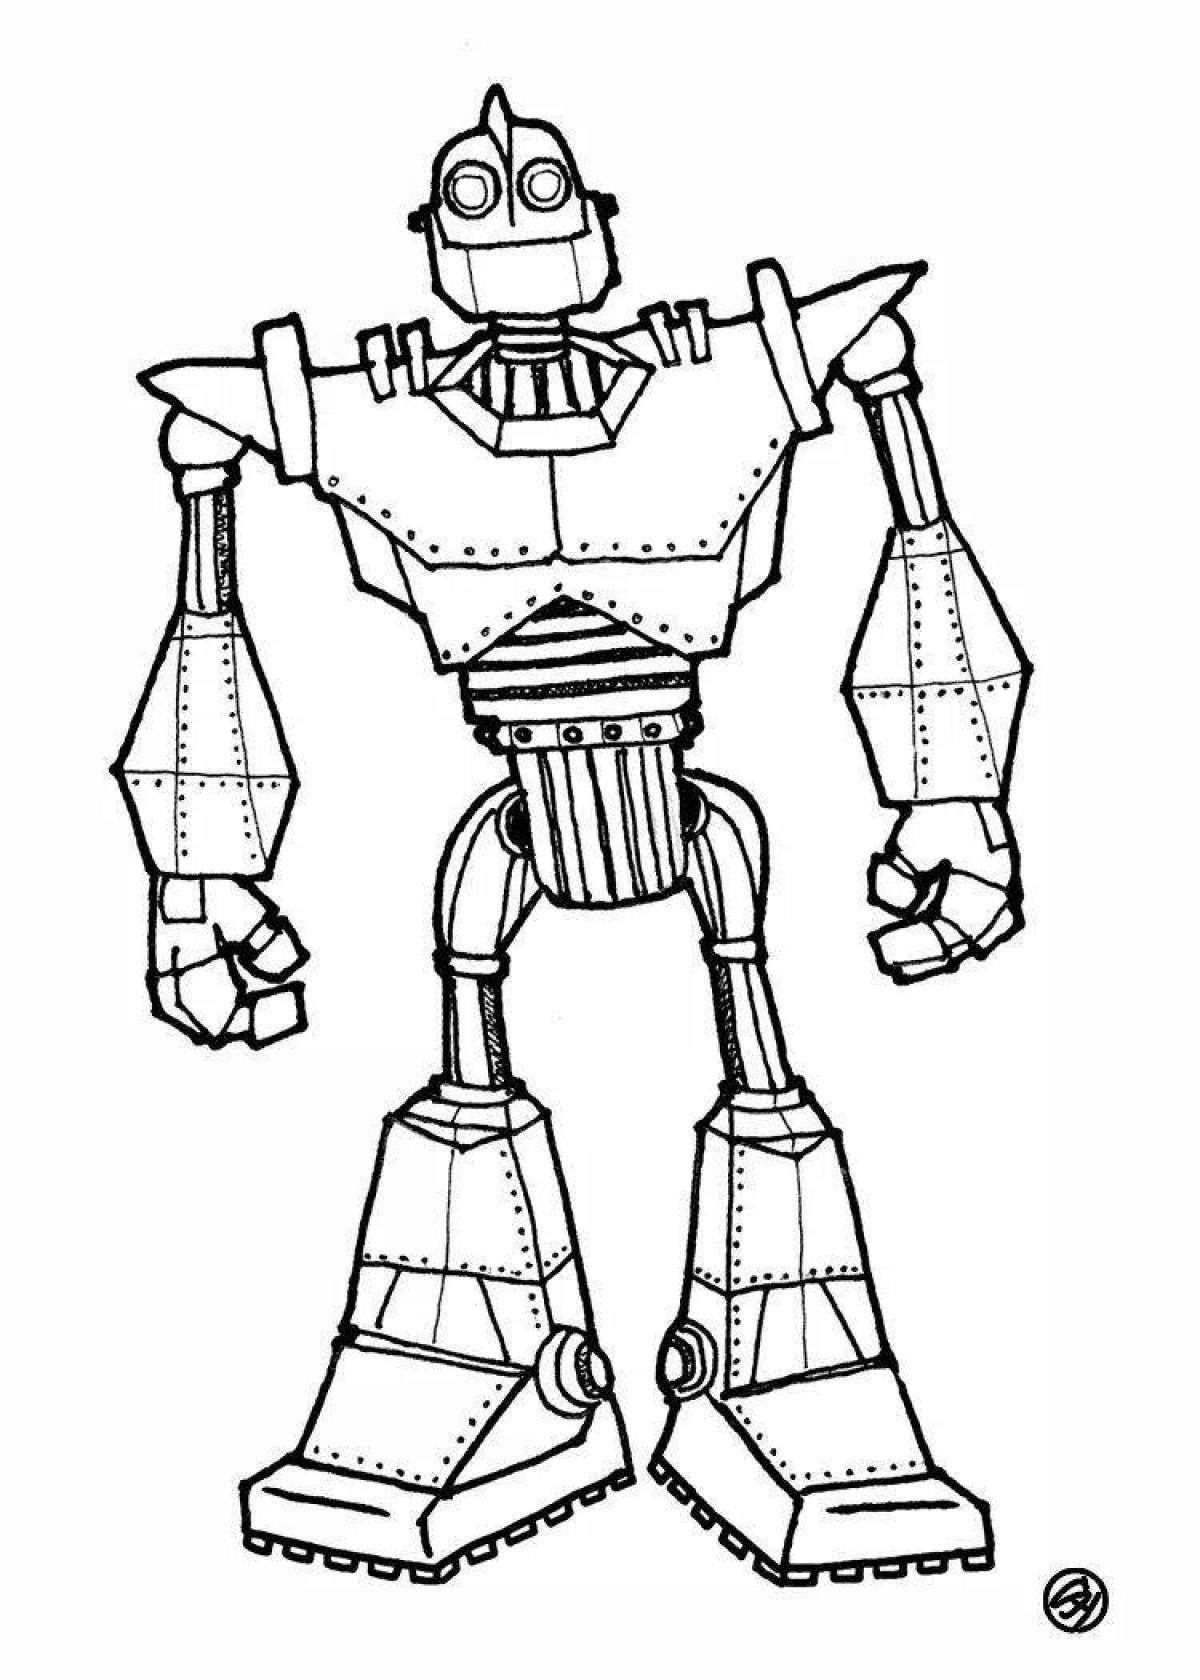 Волшебная раскраска «Трансформеры: Роботы под прикрытием»